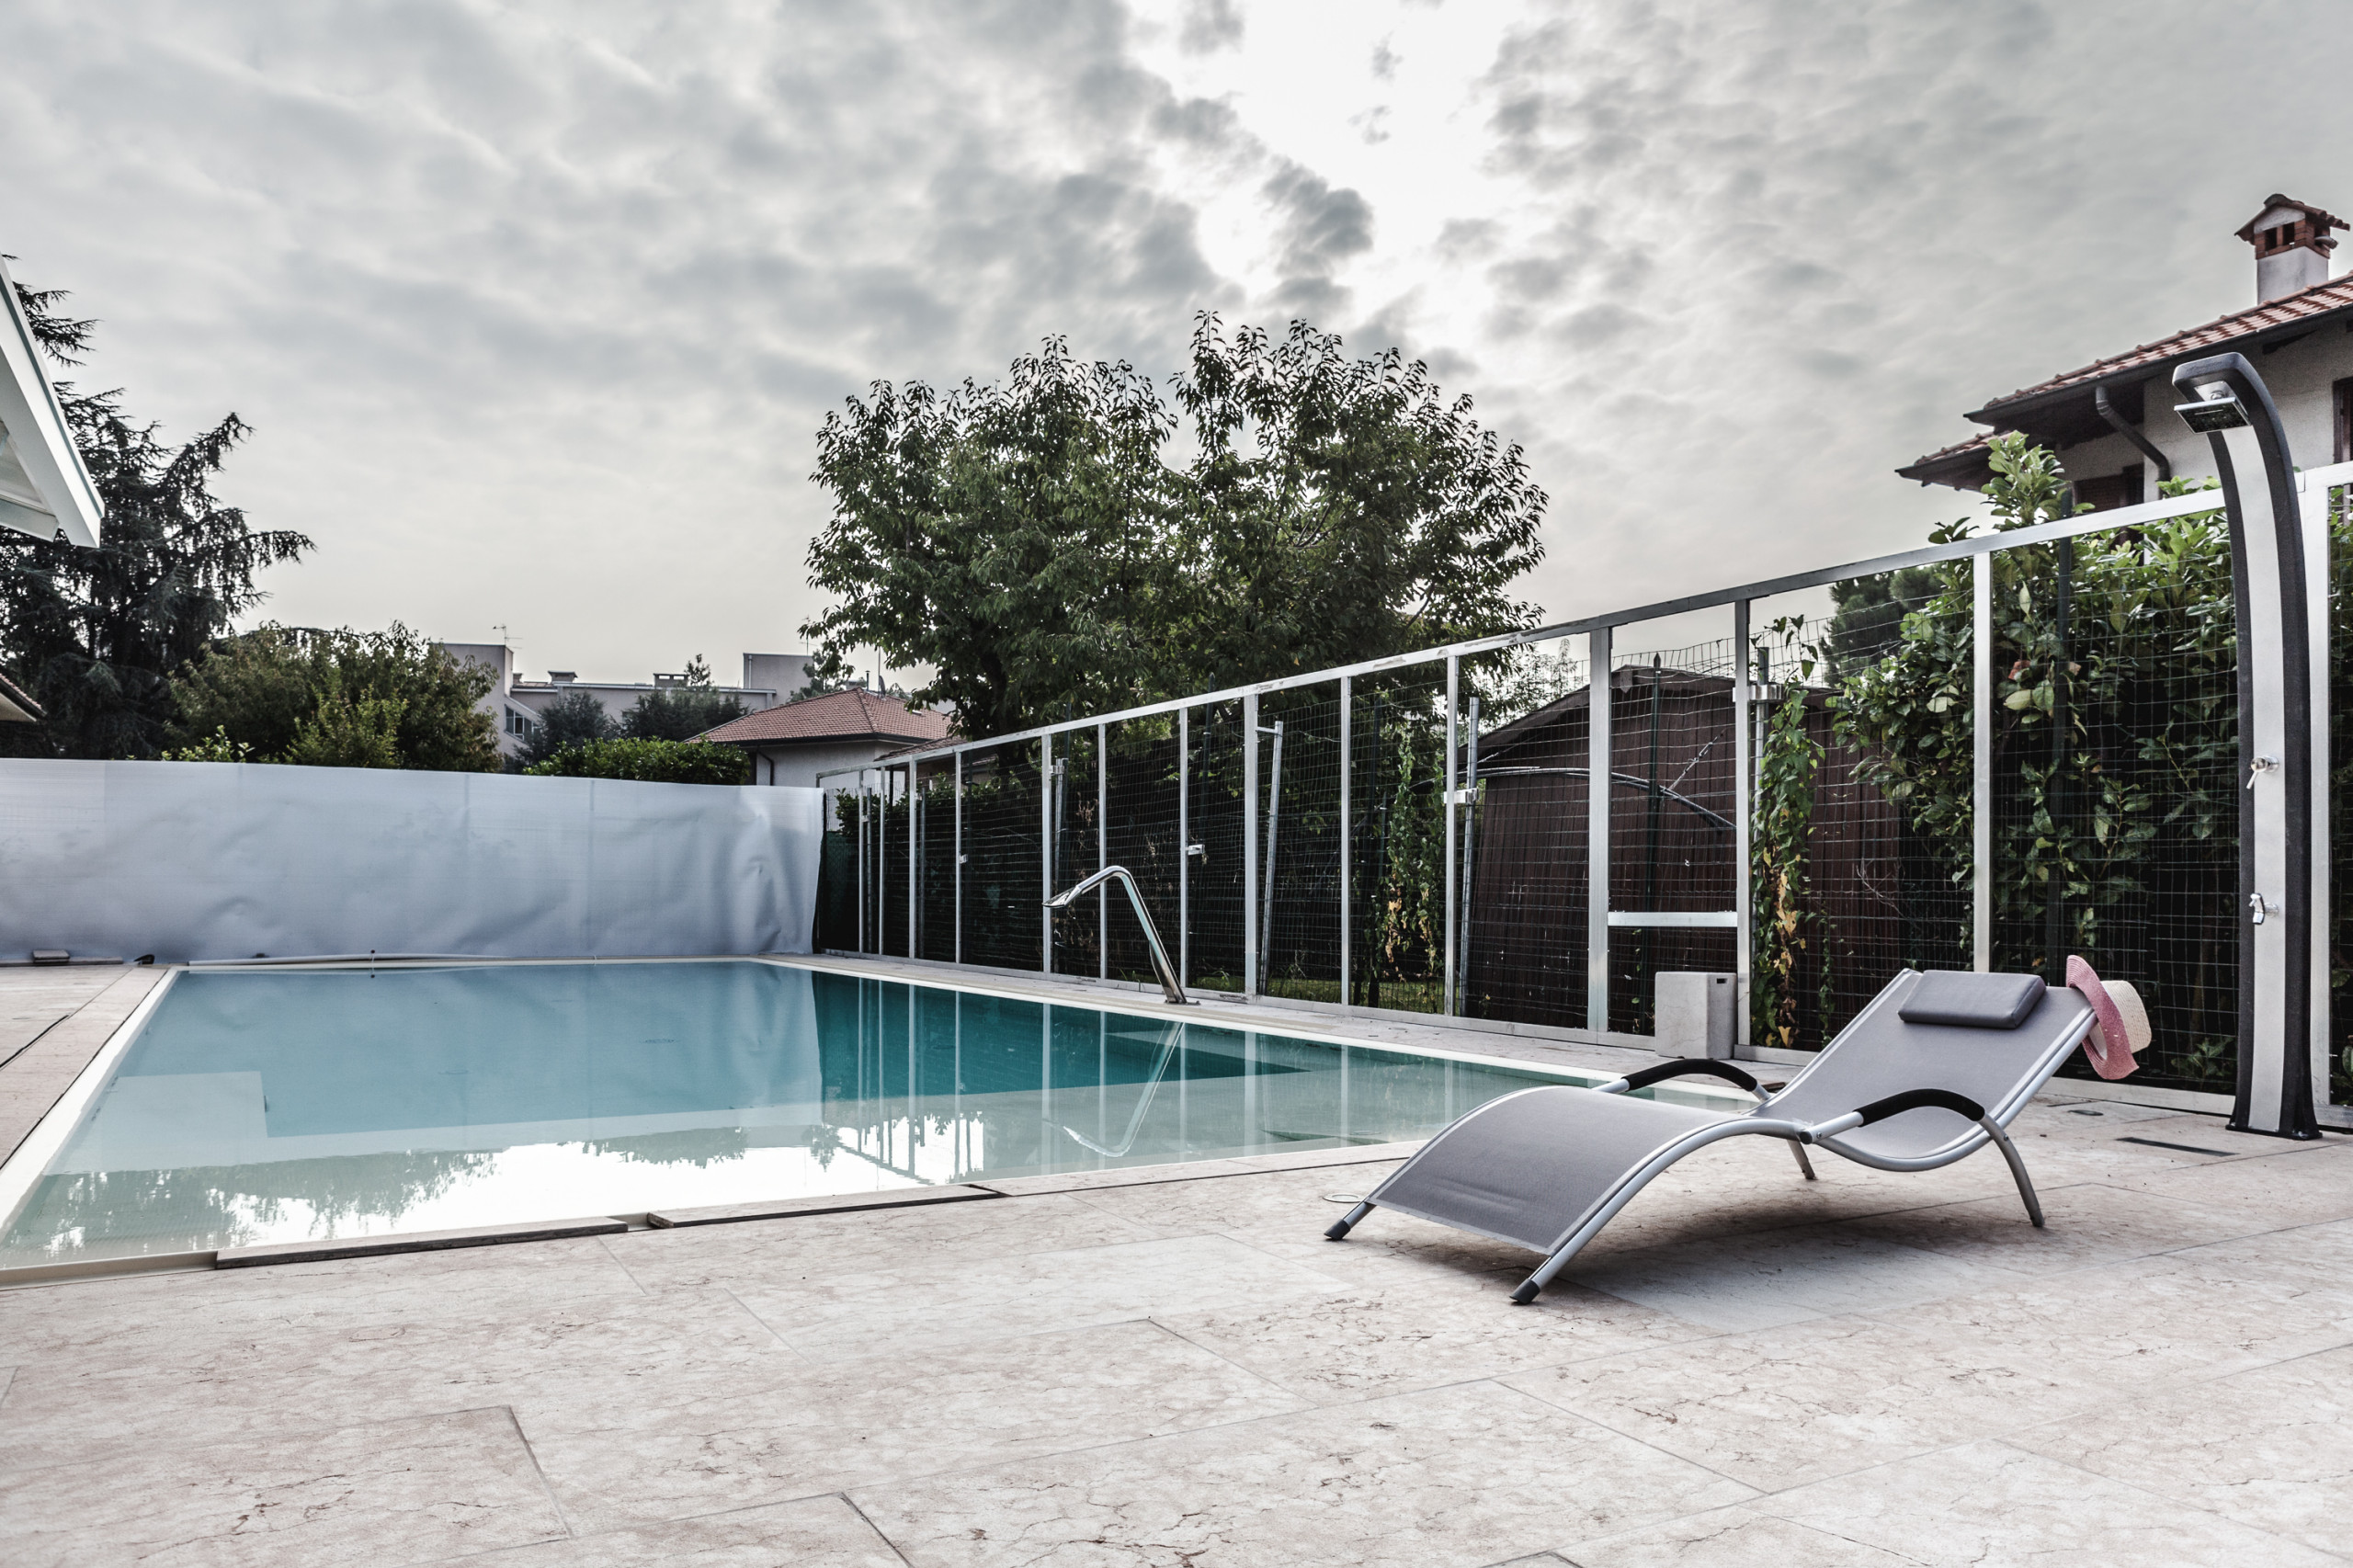 Villa con piscina | Ristrutturazione completa 100mq